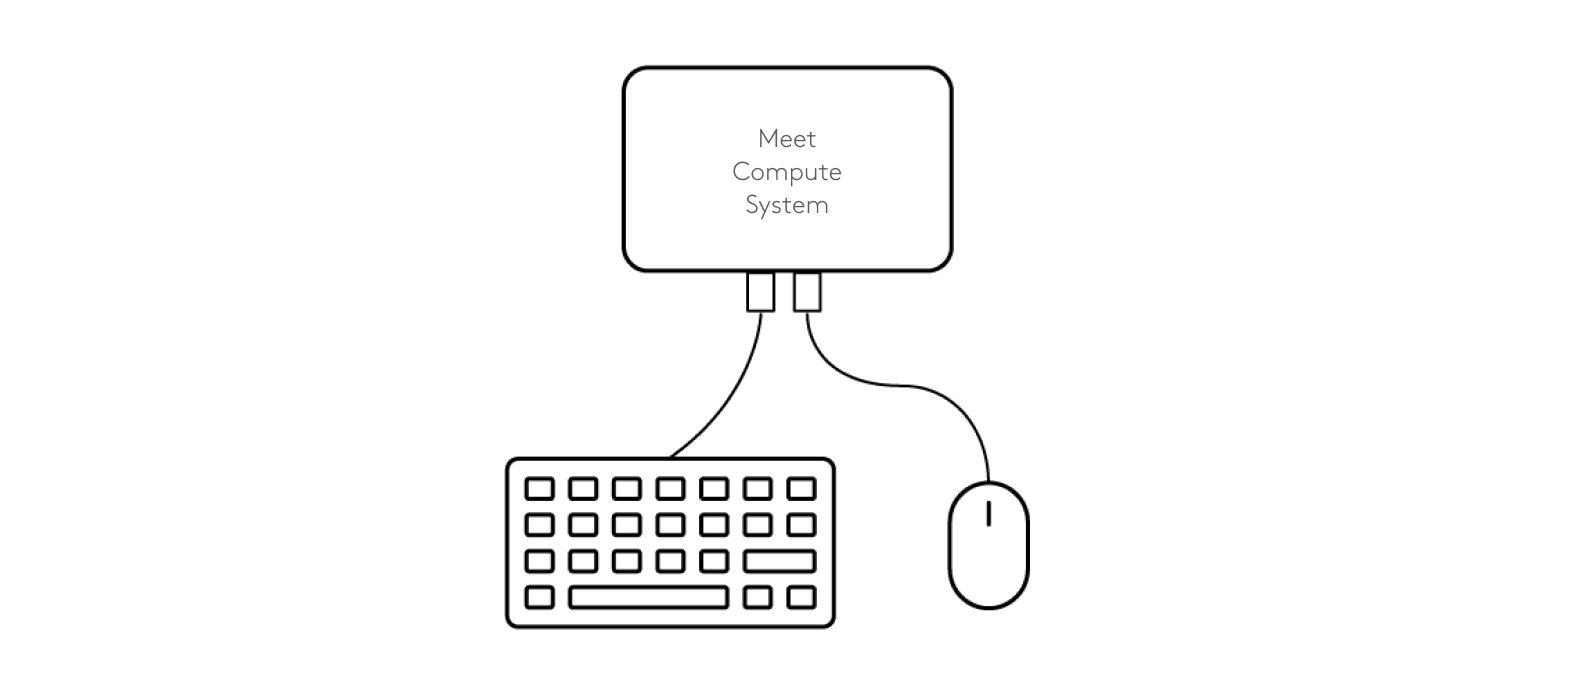 为 Meet Compute System 连接键盘和鼠标的示意图